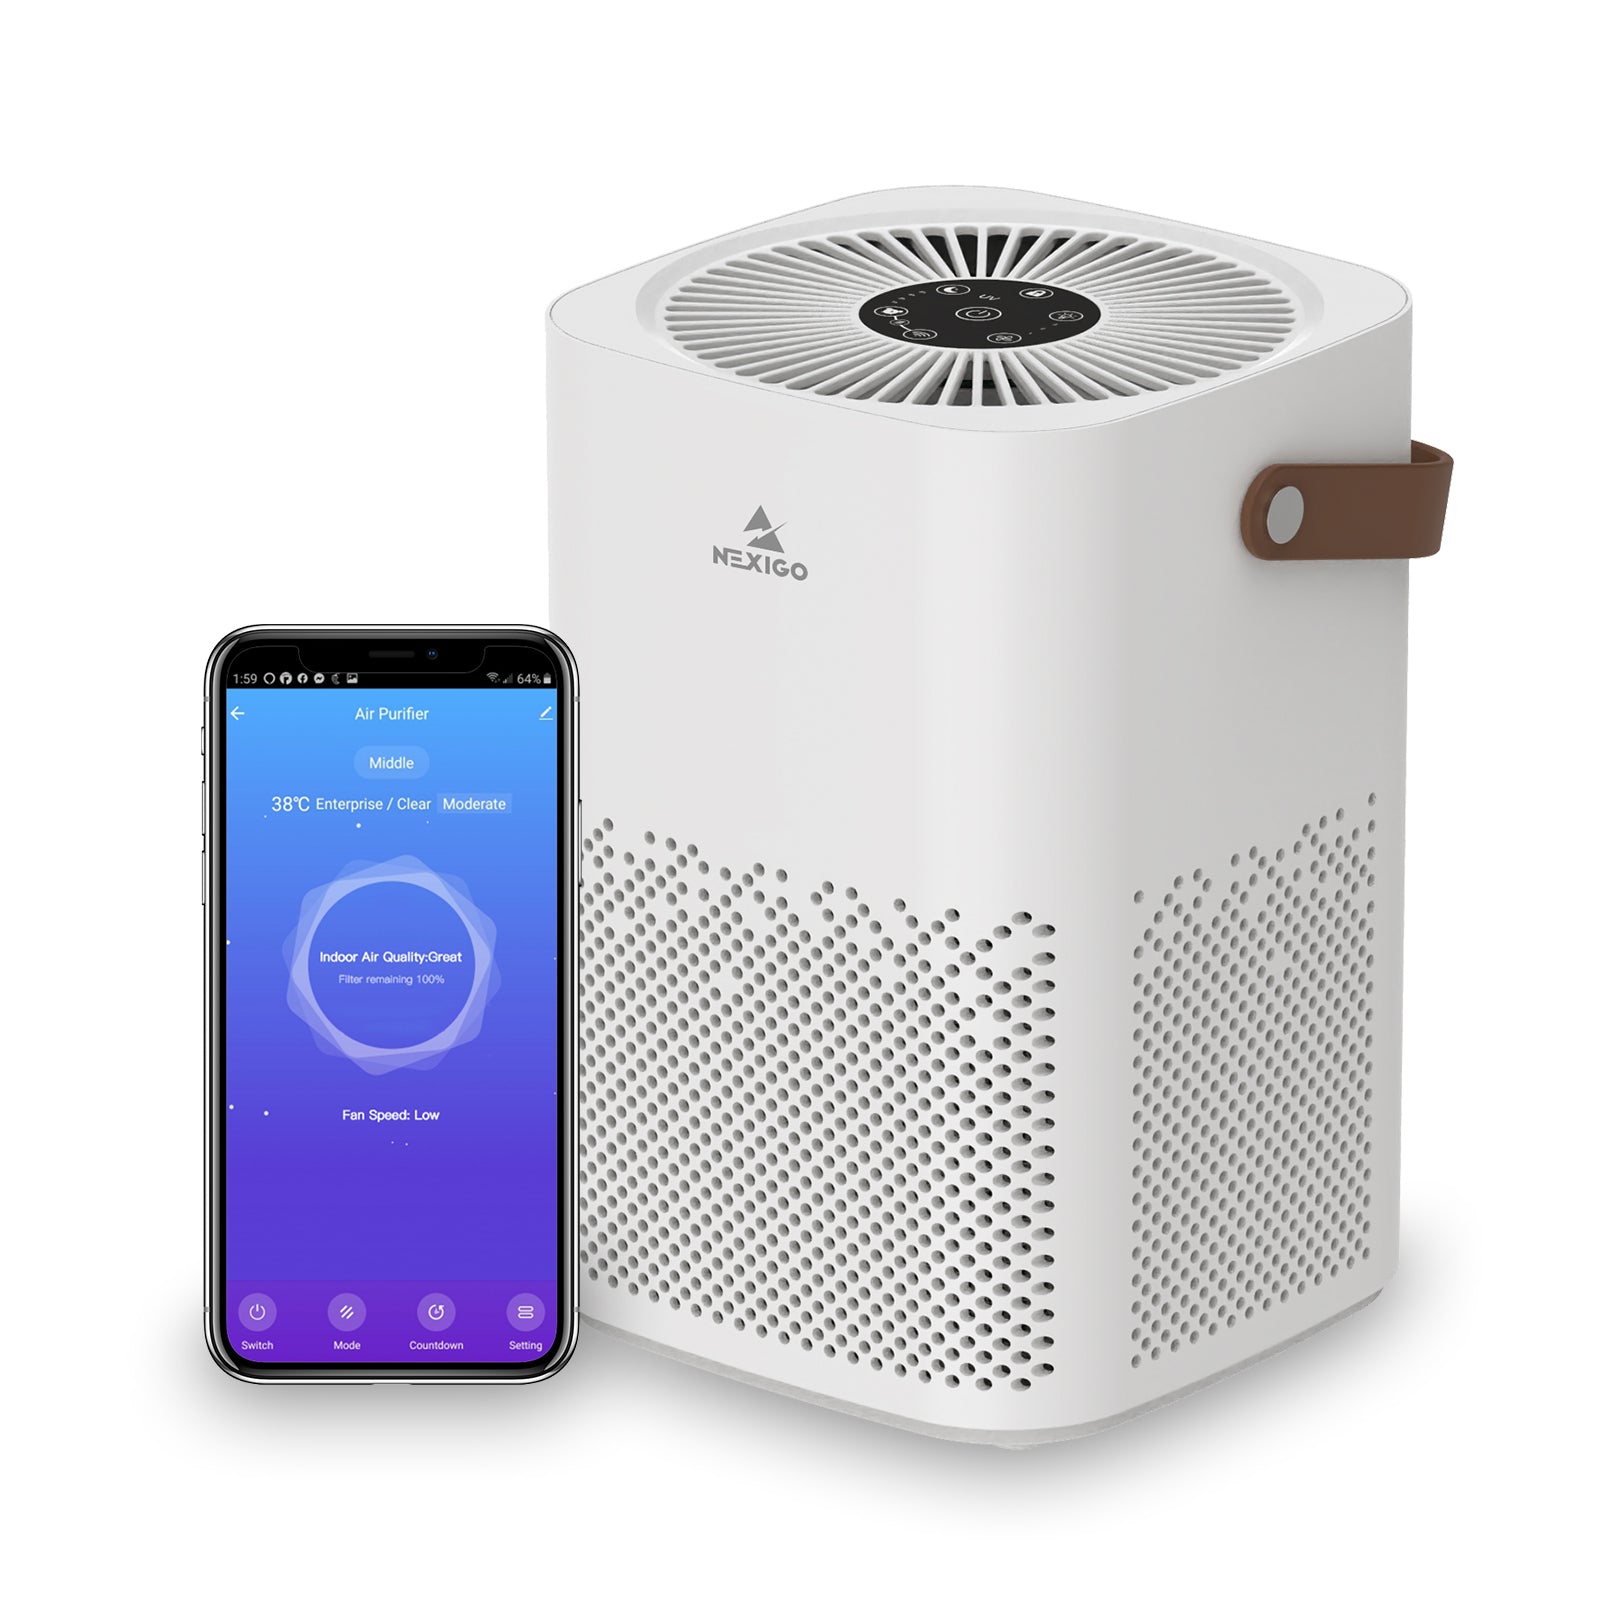 NexiGo mini air purifier with smart app control